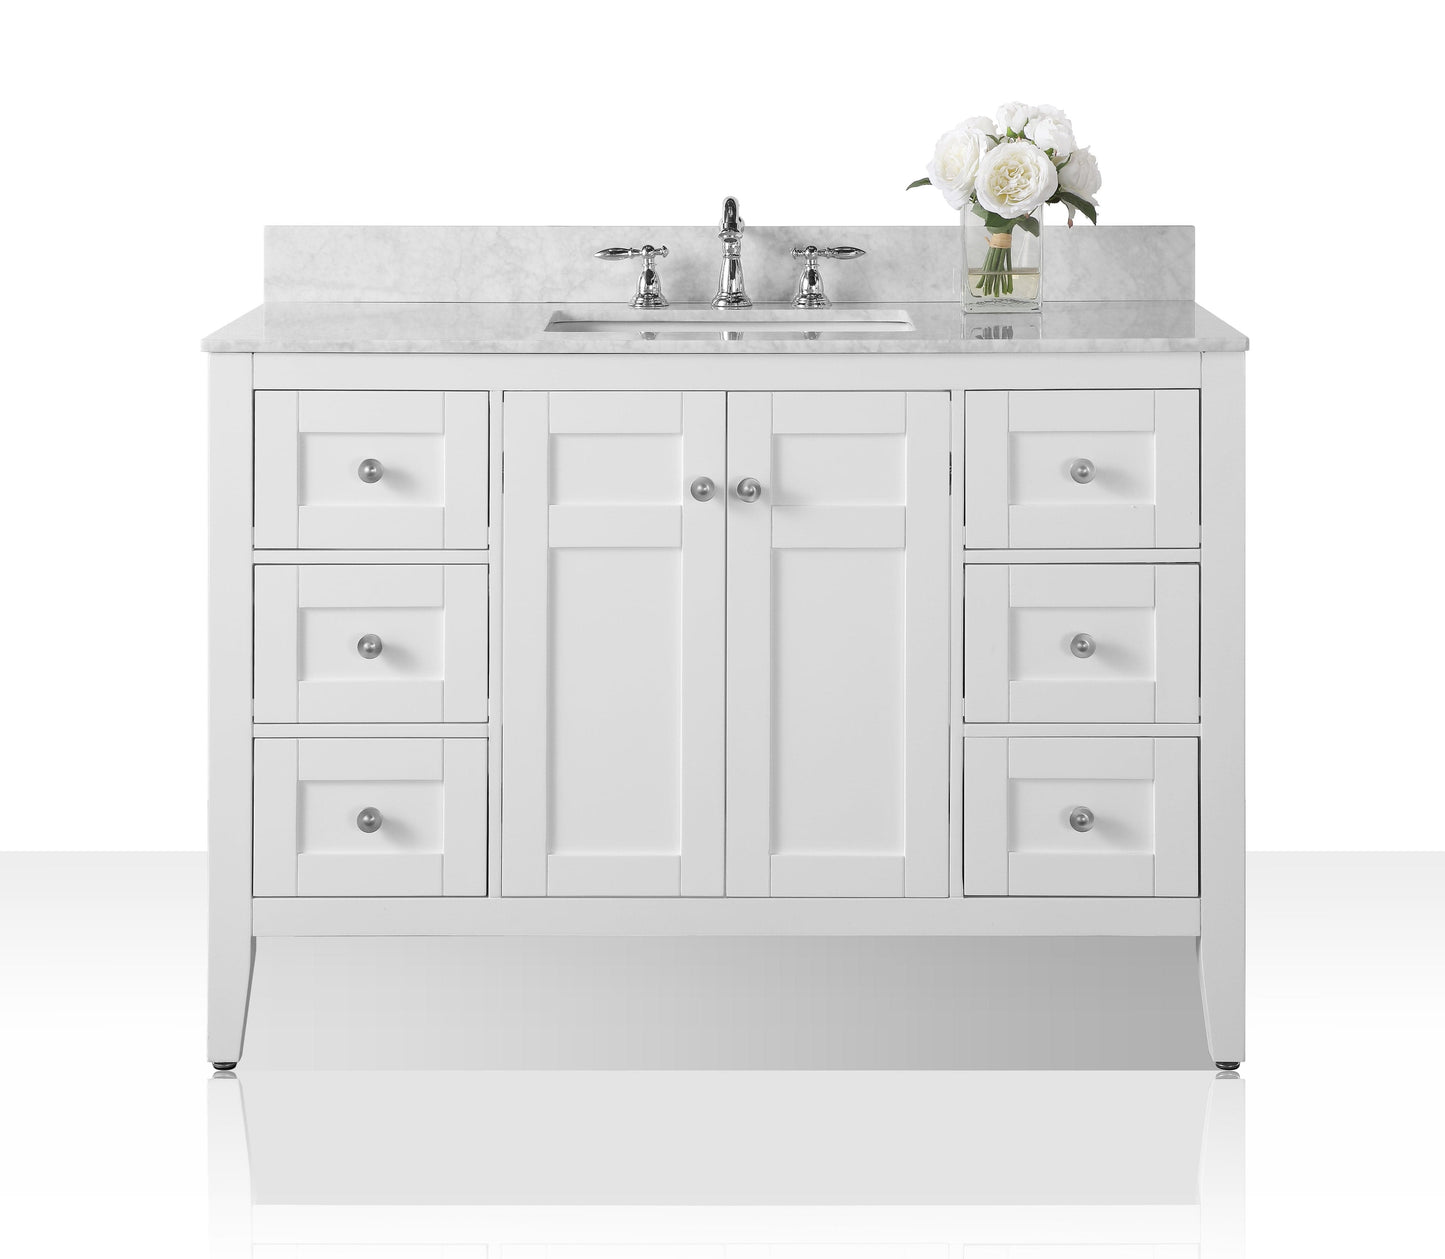 Ancerra Designs Maili 48 in. Bath Vanity Set in White